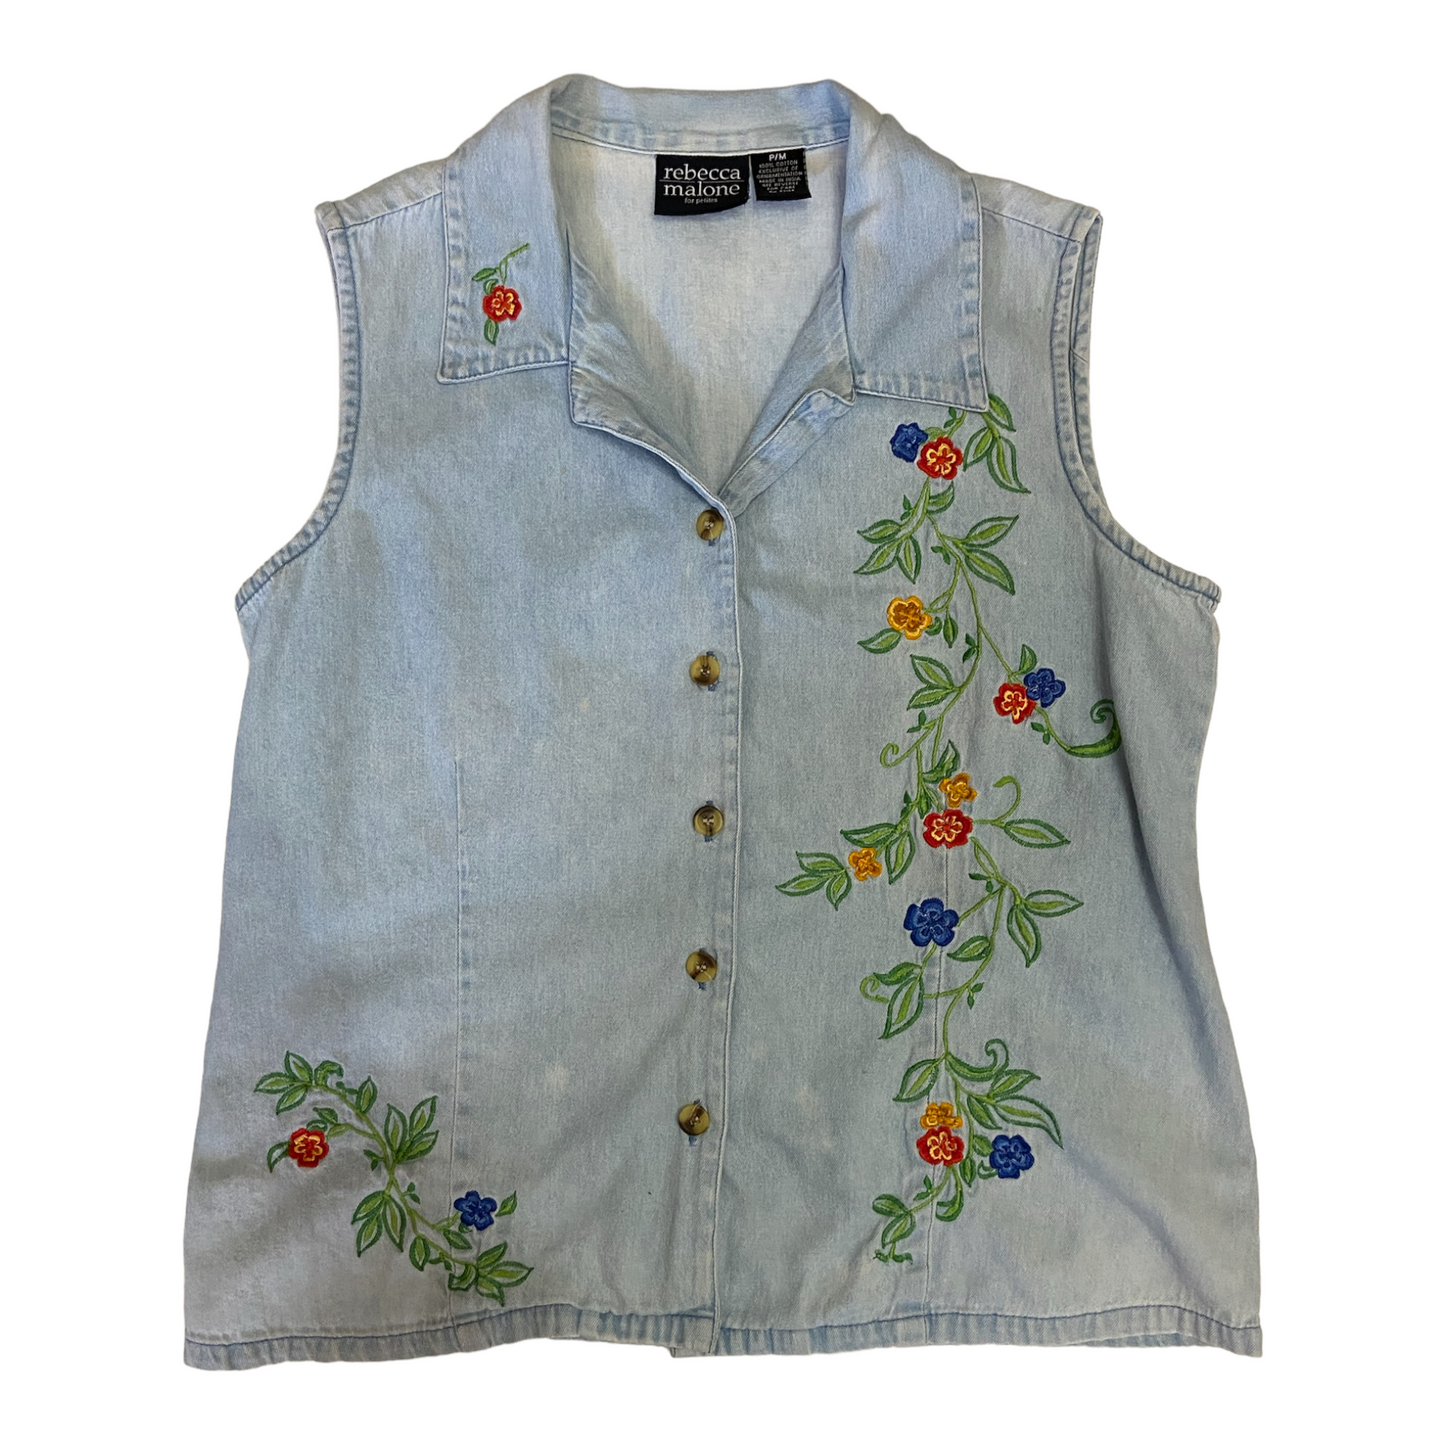 Rebecca Malone Embroidered Vest